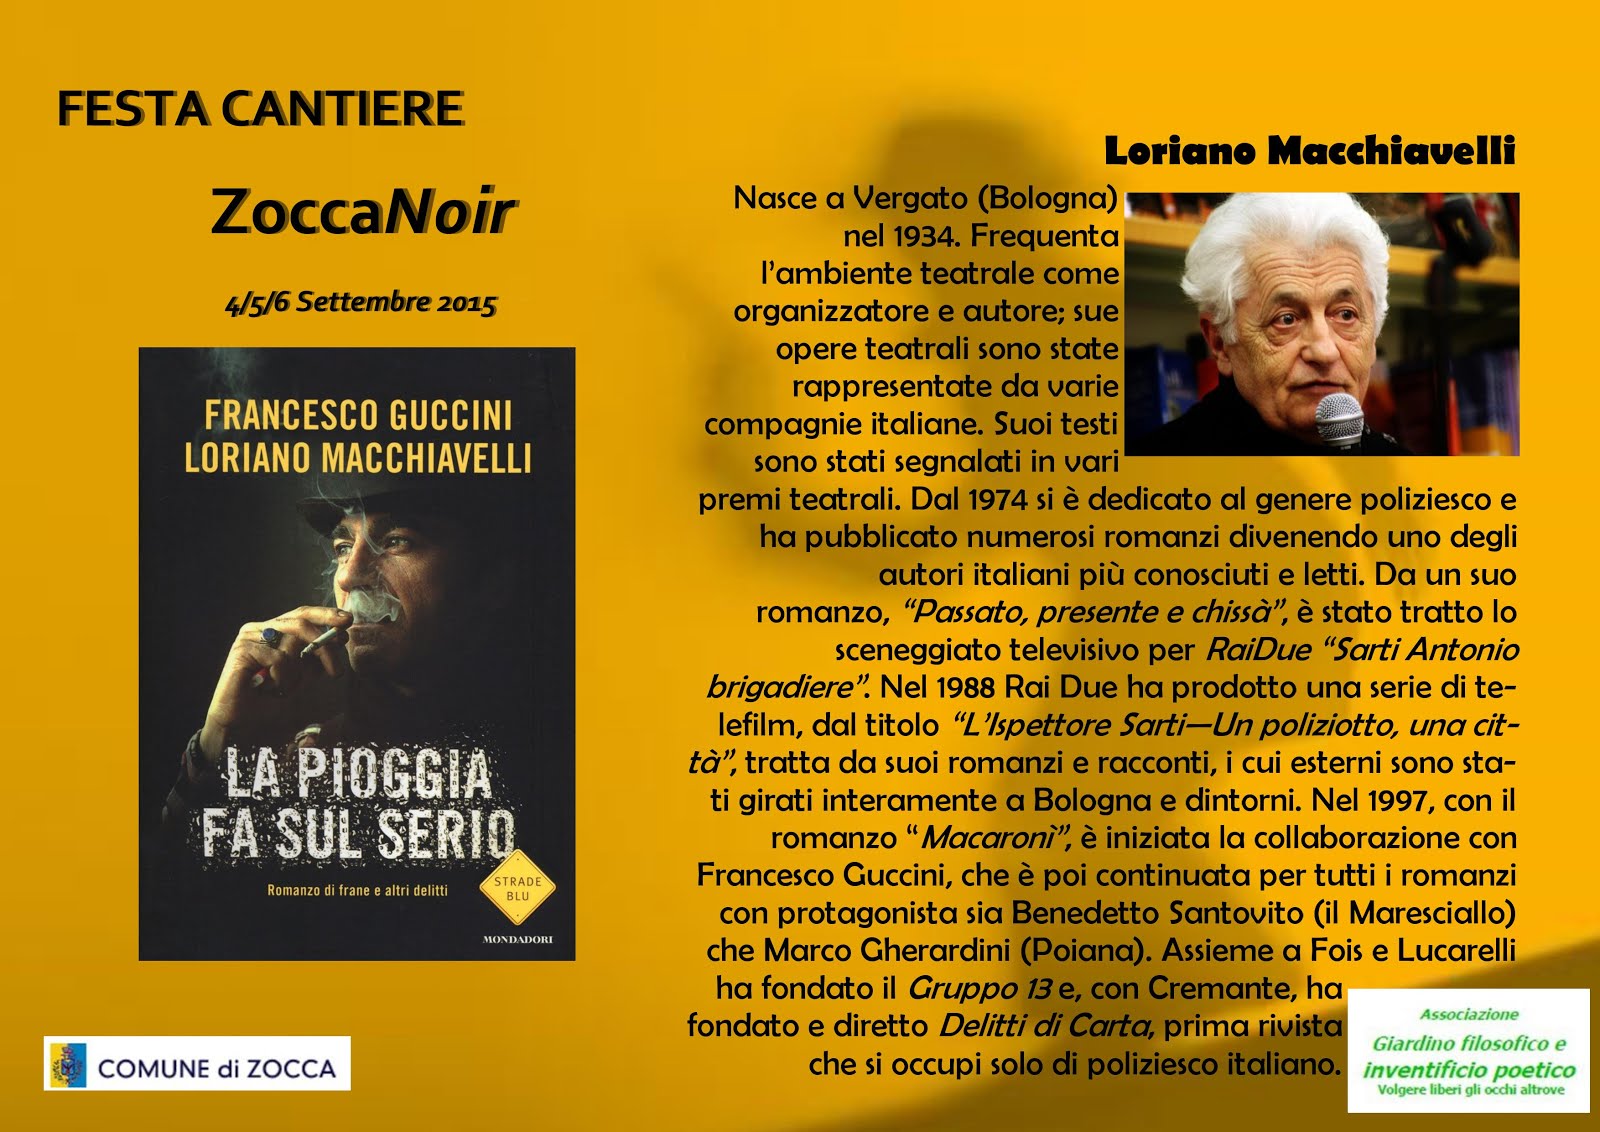 Biografia Loriano Macchiavelli